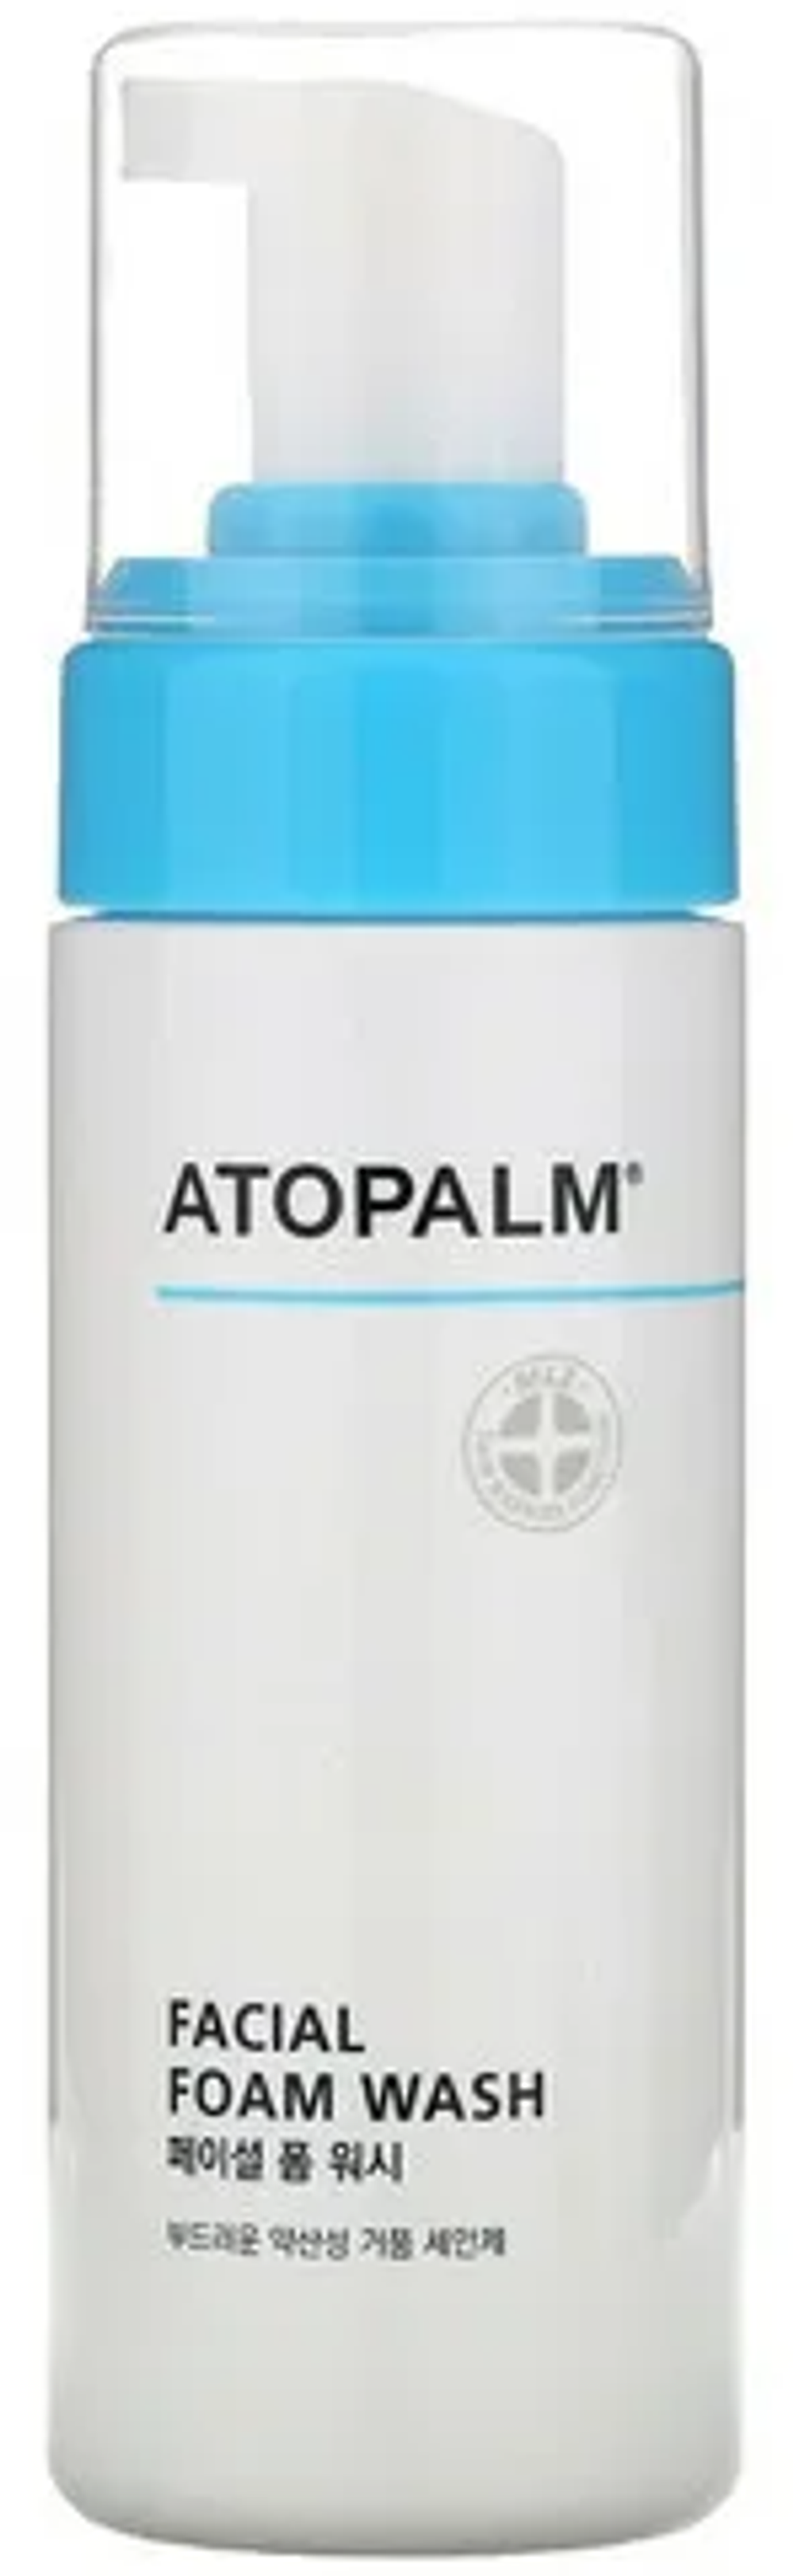 ATOPALM Facial Foam Wash пенка для умывания 150 мл